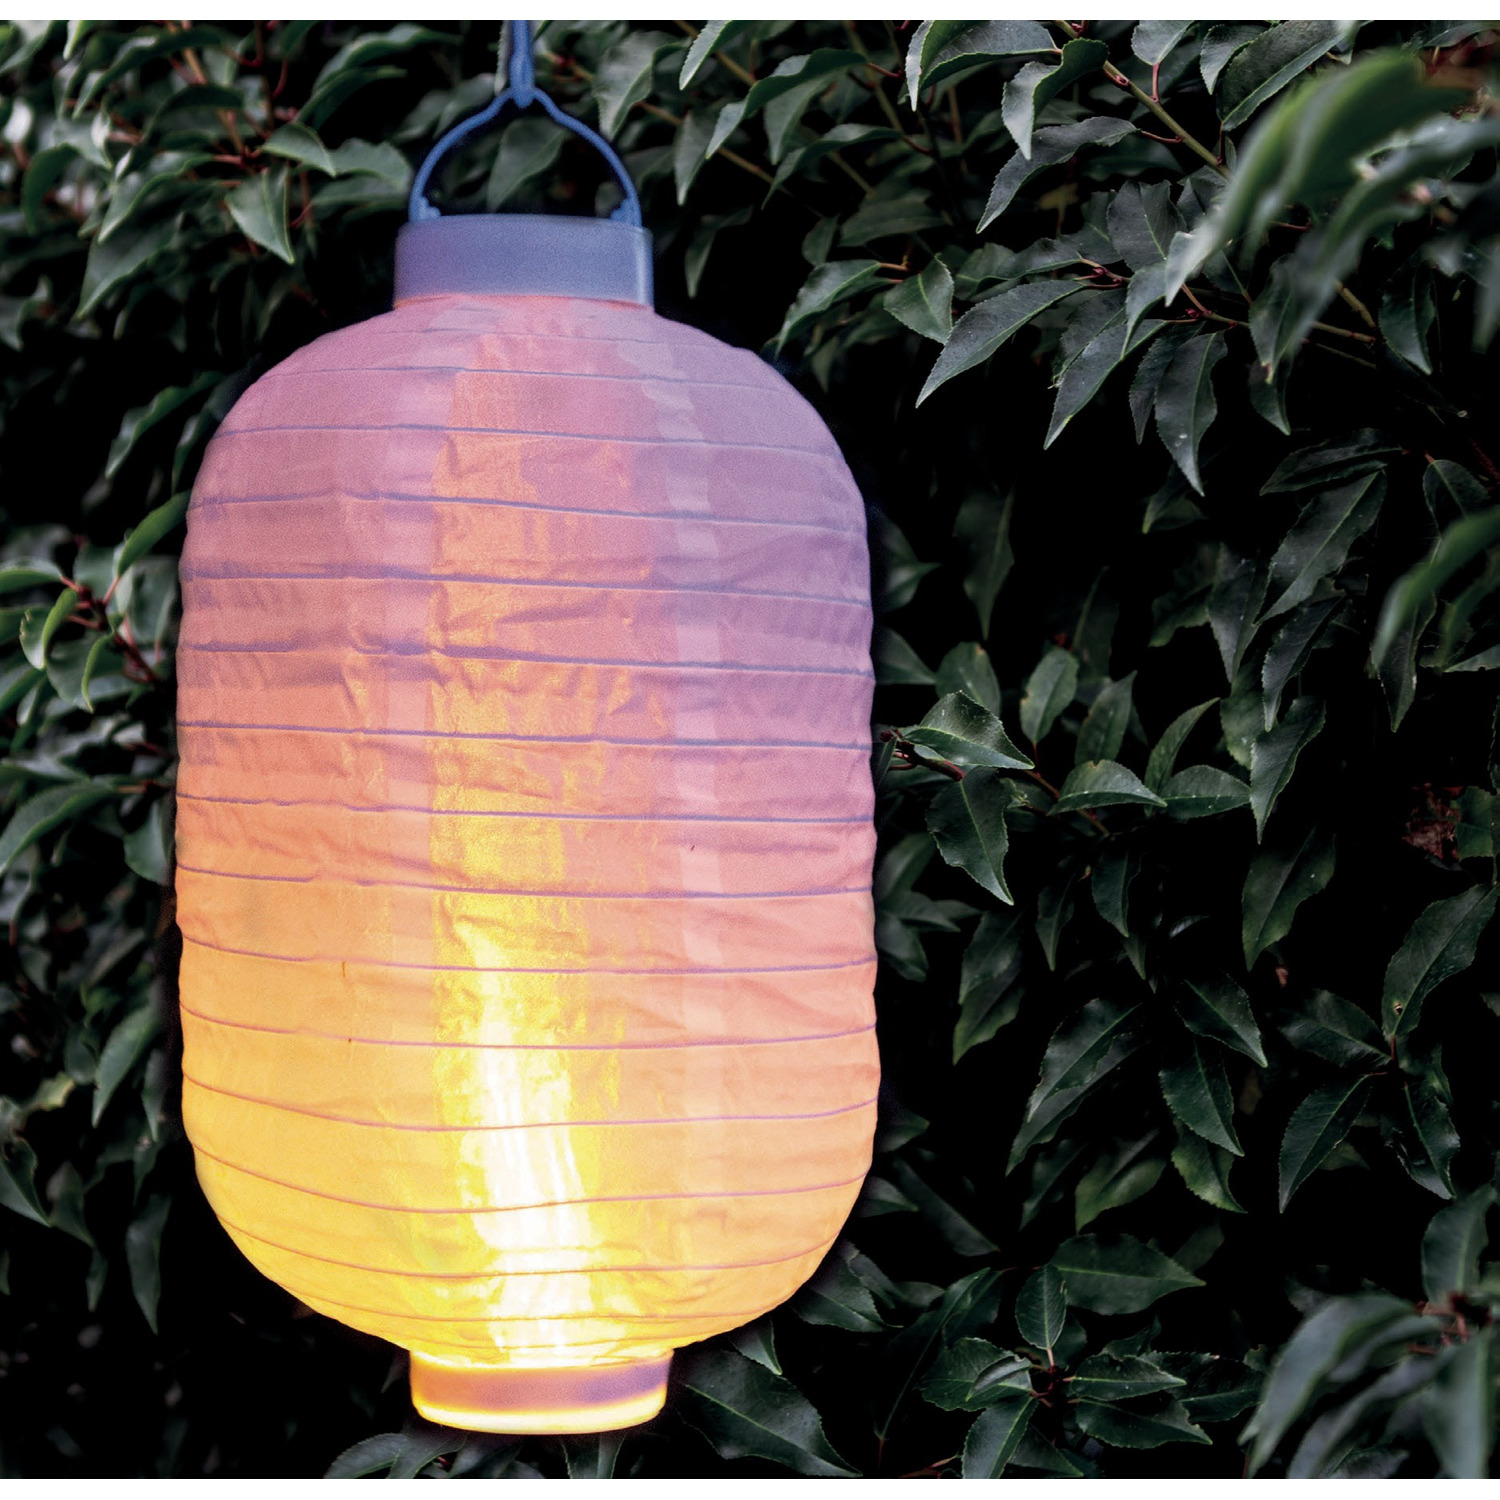 9x stuks luxe solar lampion/lampionnen wit met realistisch vlameffect 20 x 30 cm